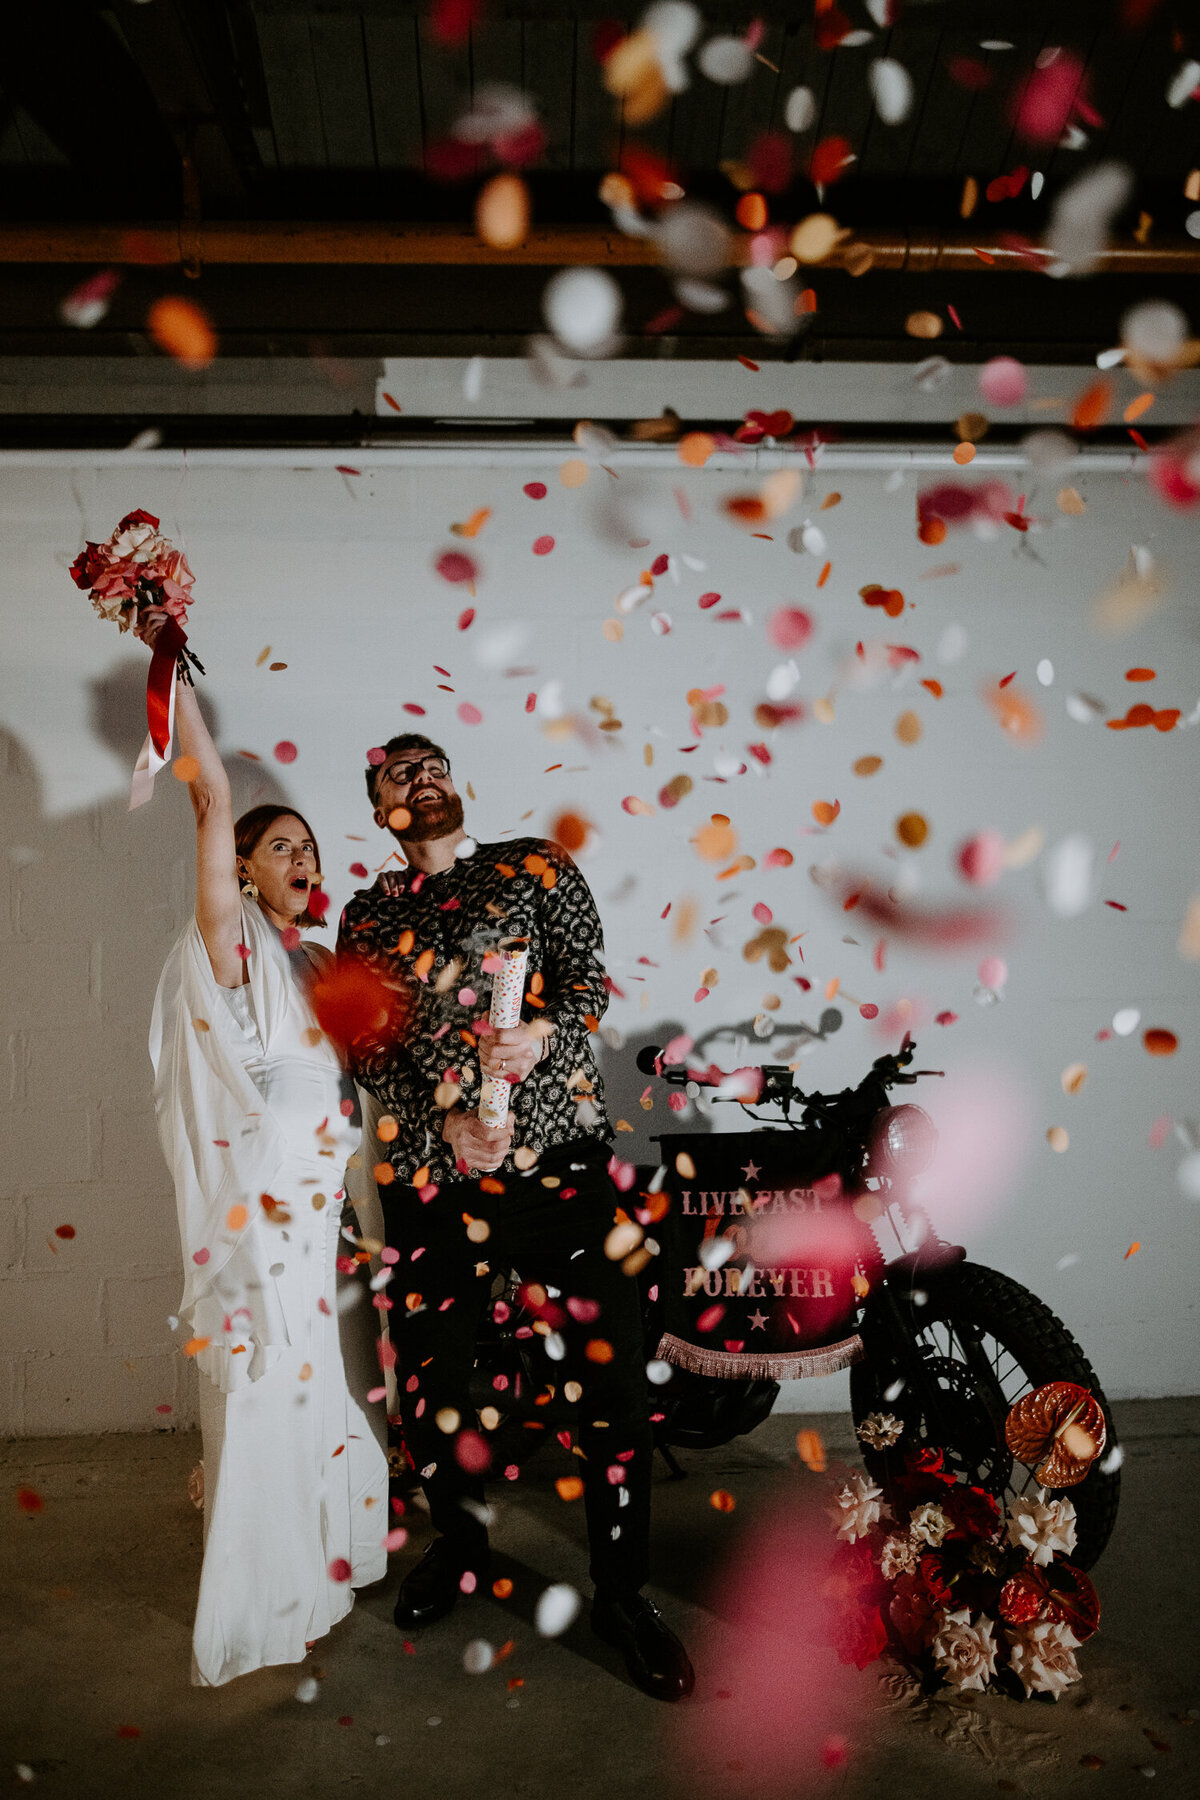 A wedding couple fire a confetti canon at their wedding in Las Vegas.